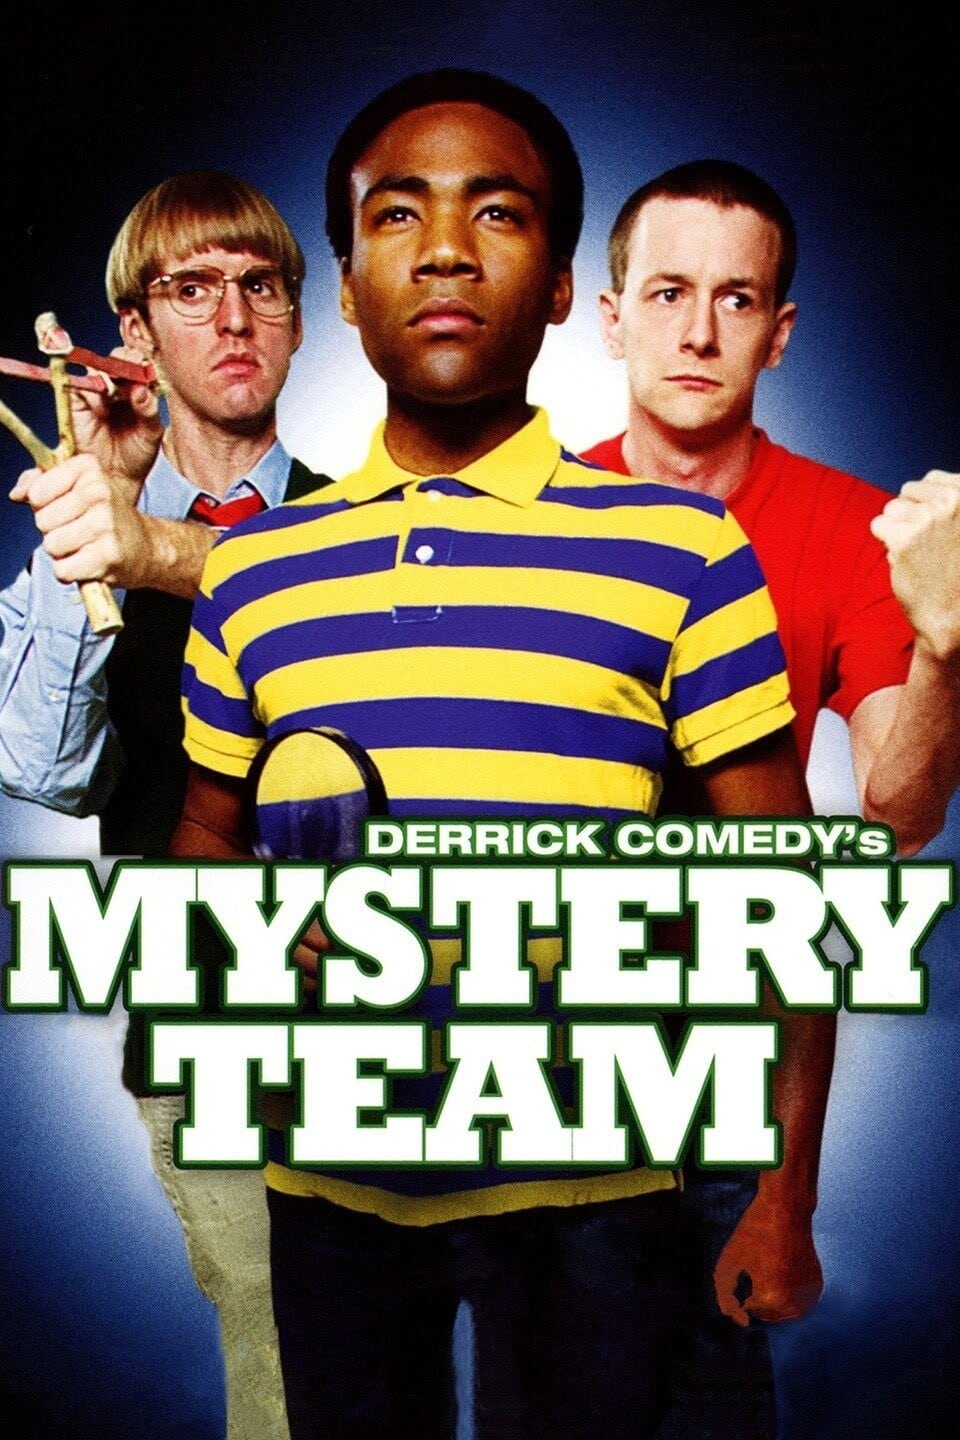 Mystery Team (2009)